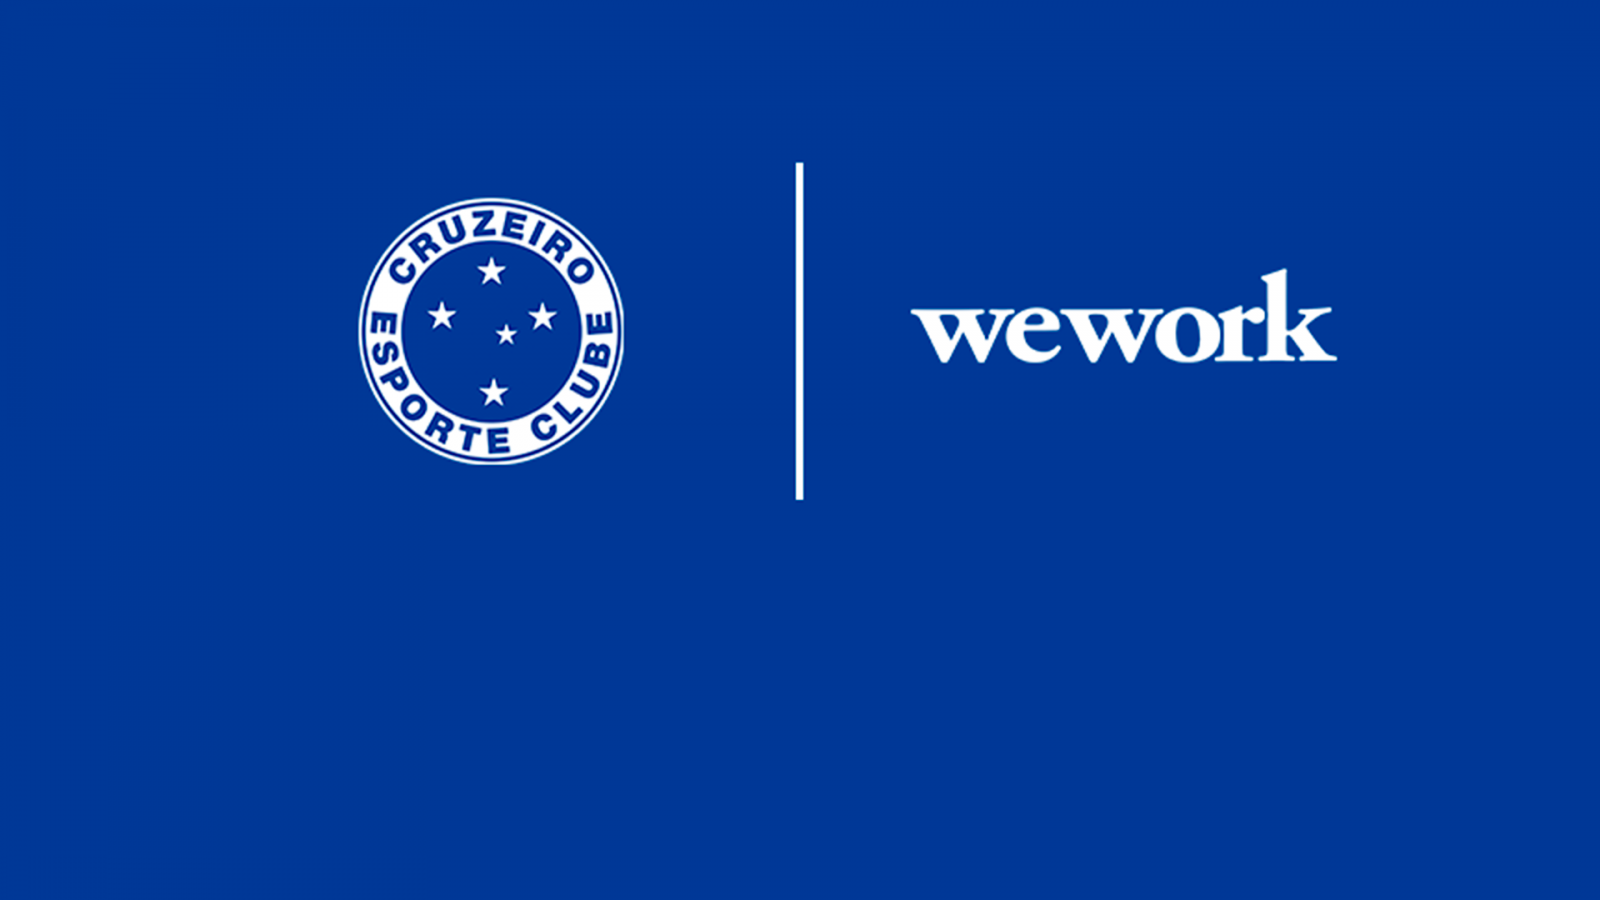 Área administrativa do Cruzeiro tem mudança programada para a WeWork a partir de segunda-feira